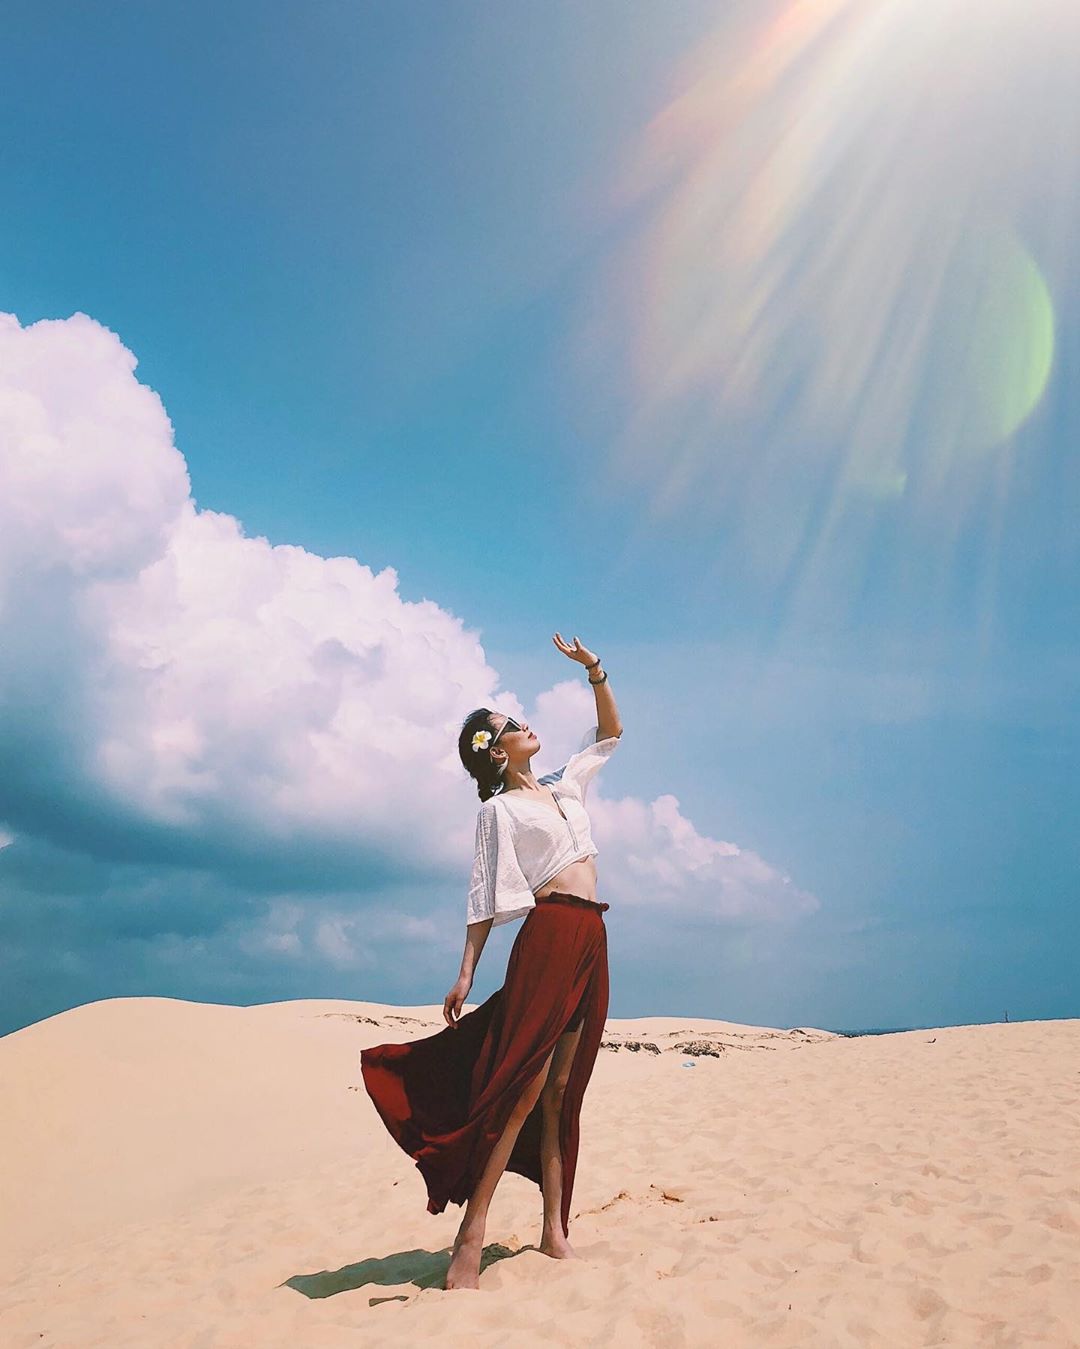 Cồn cát Quang Phú, thiên đường cát với những khoảnh khắc vô cùng đáng nhớ 7